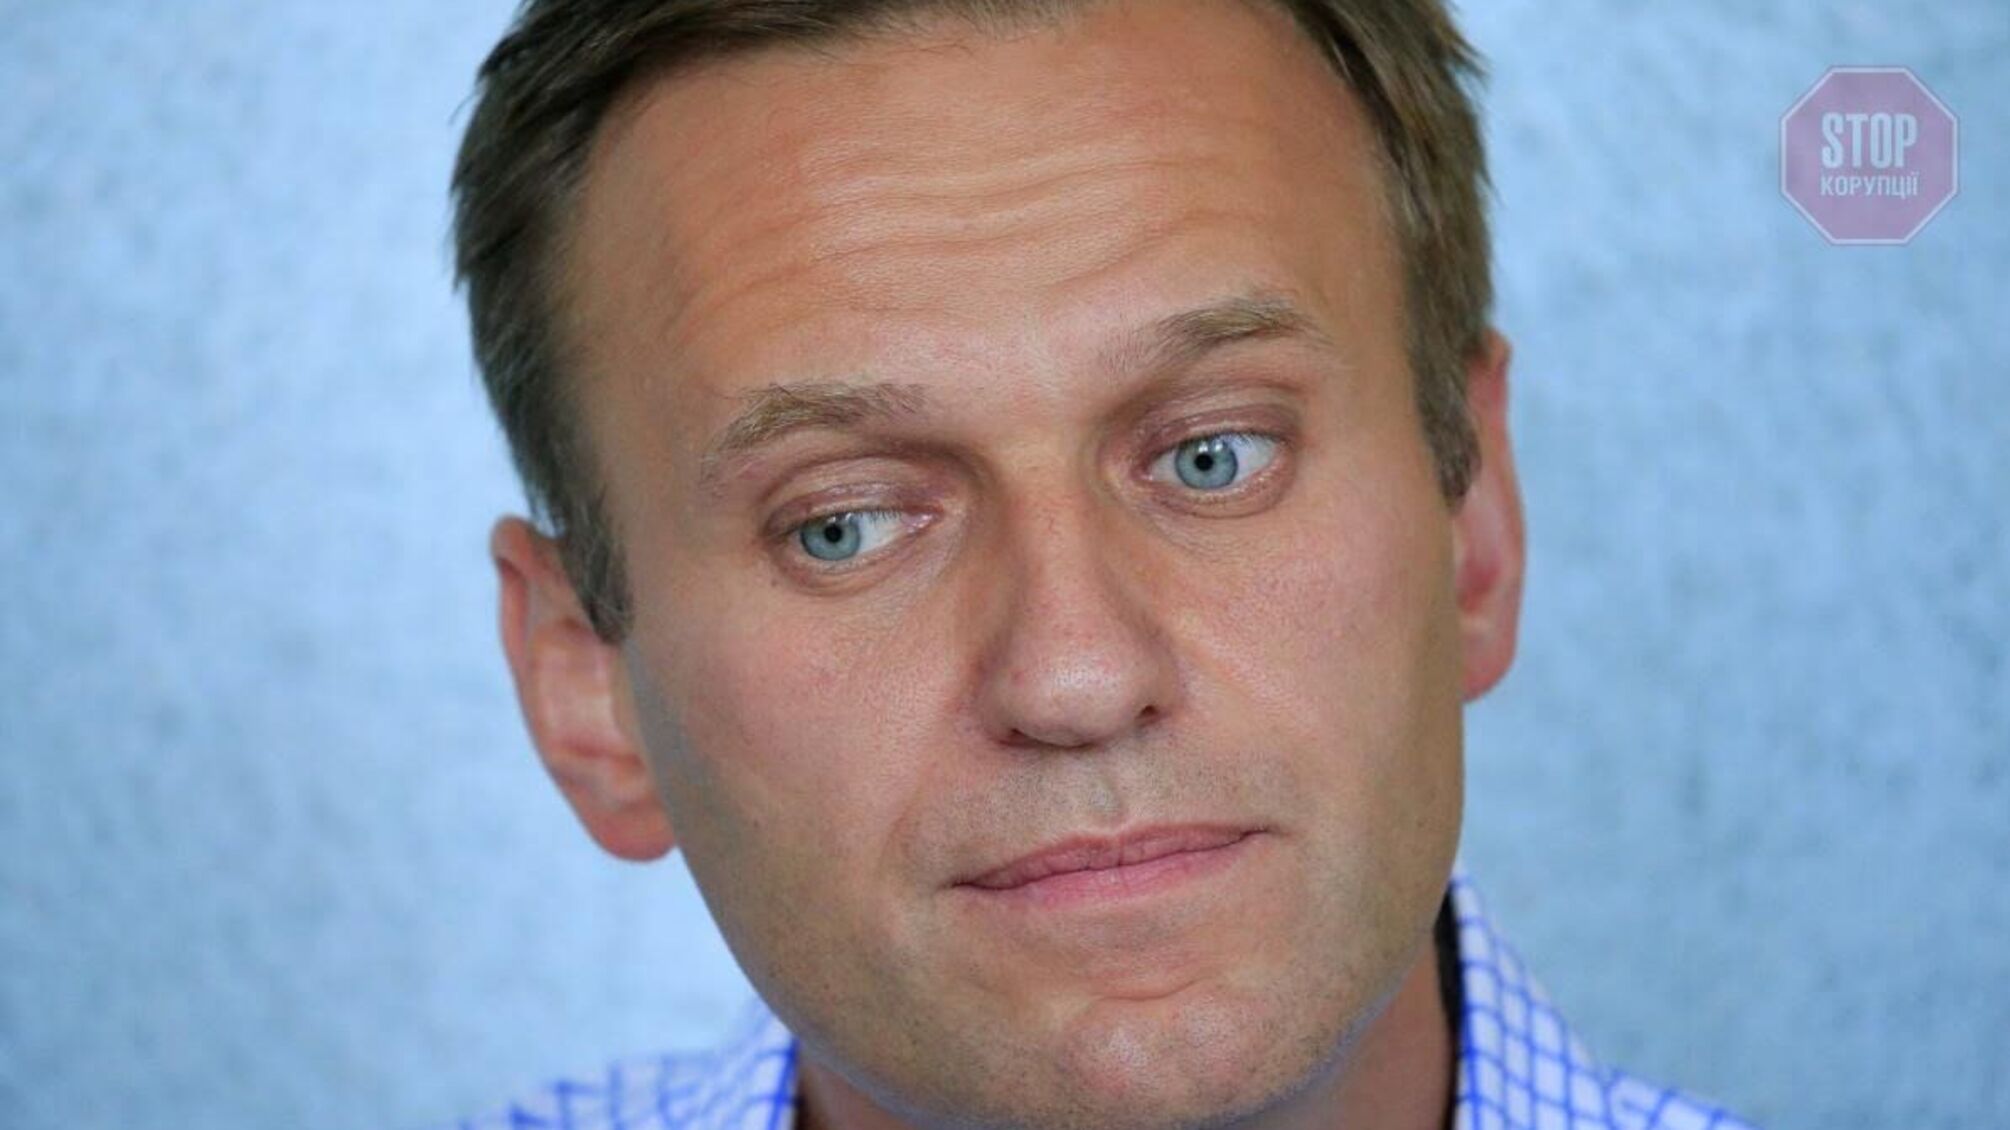 Навального не отруїли, — лікарі повідомили про діагноз опозиціонера